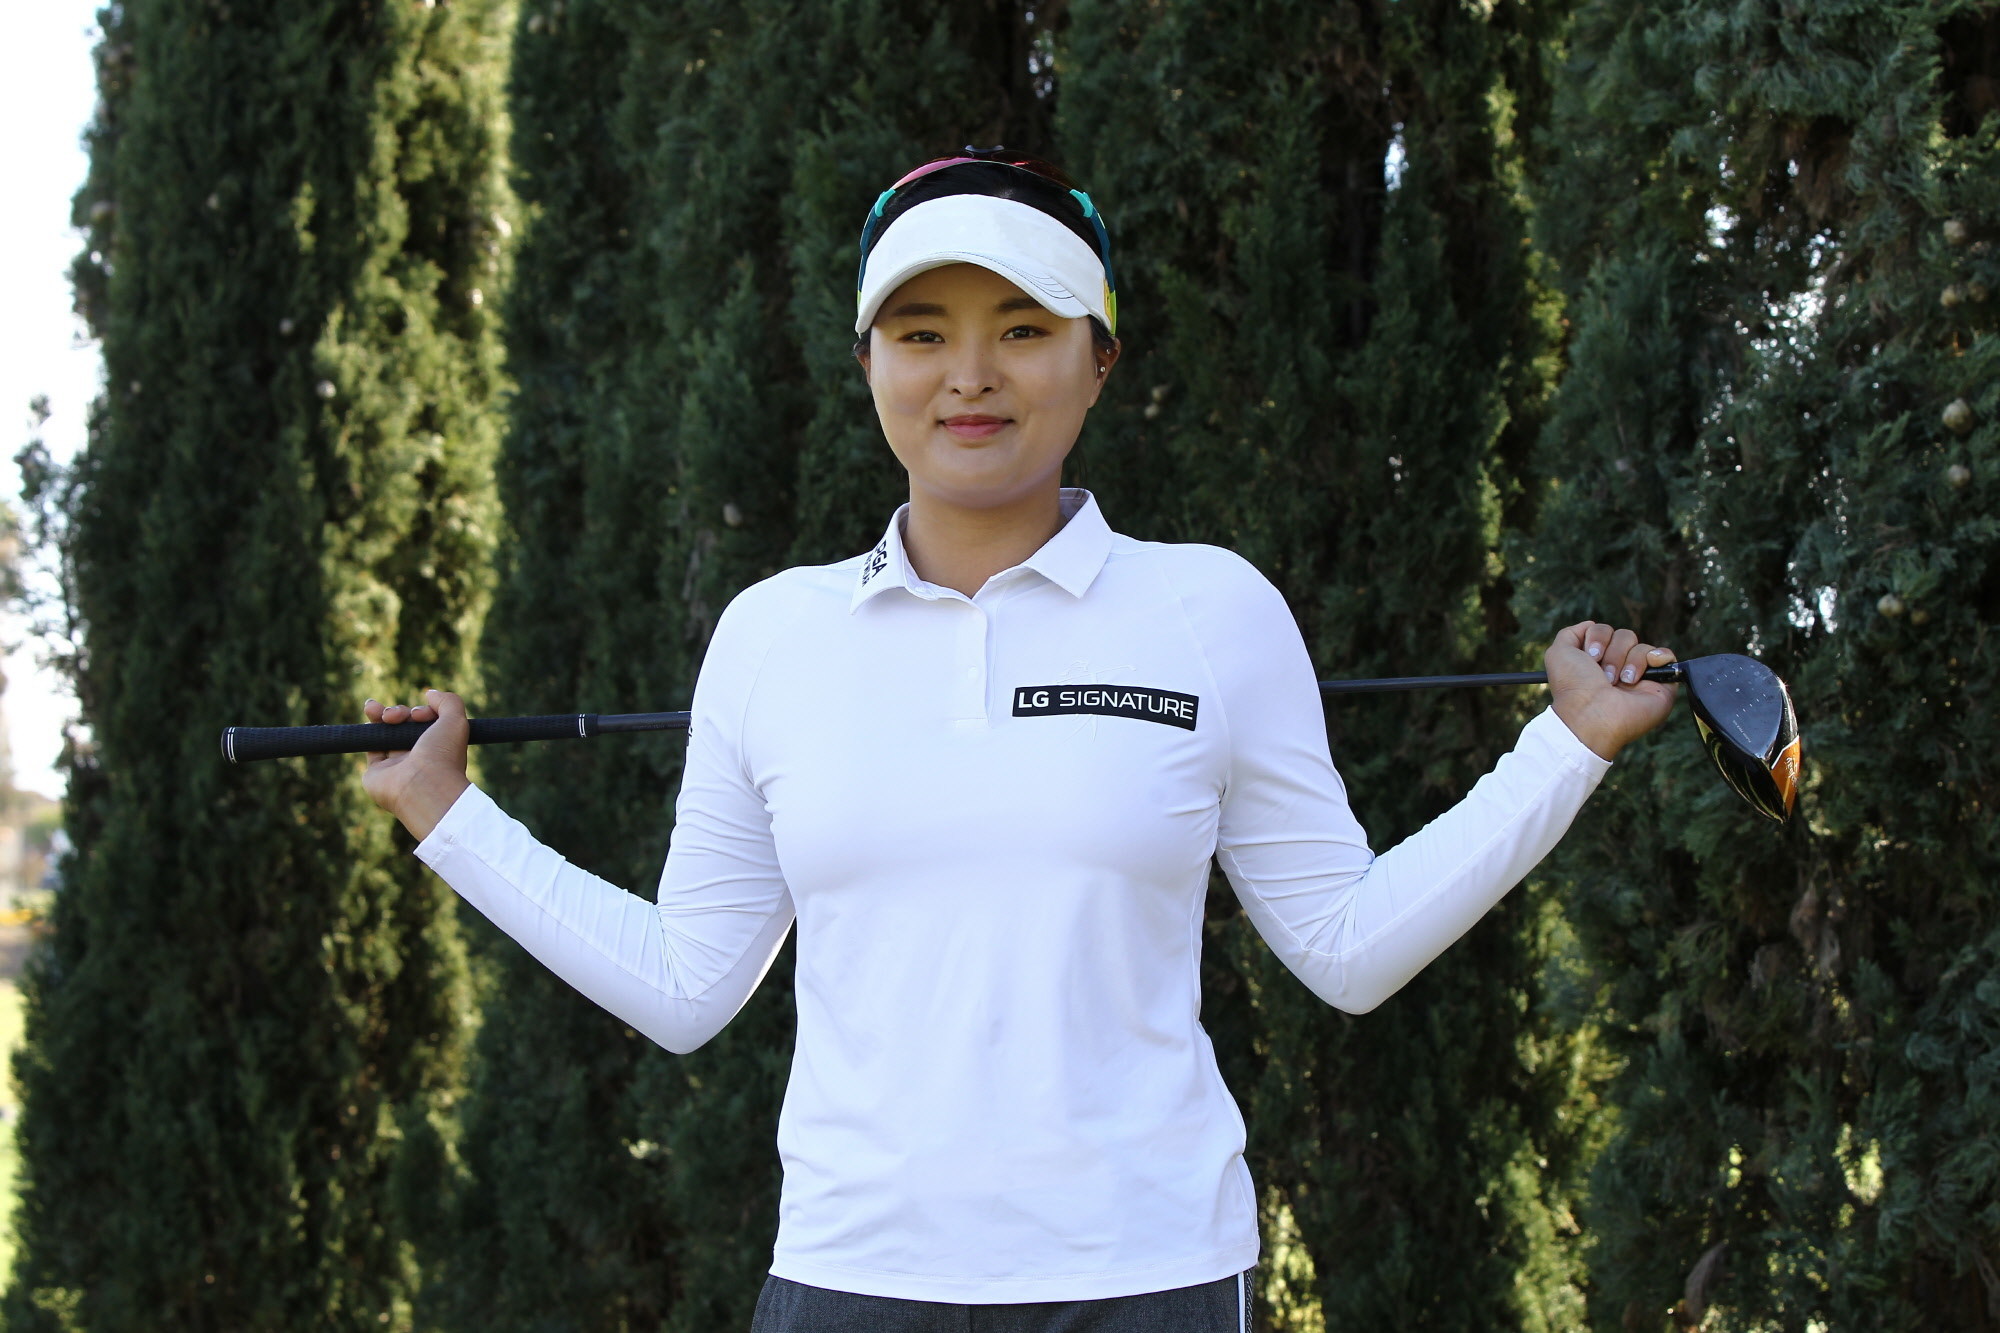 Lg Sponsors World S 1 Female Golfer